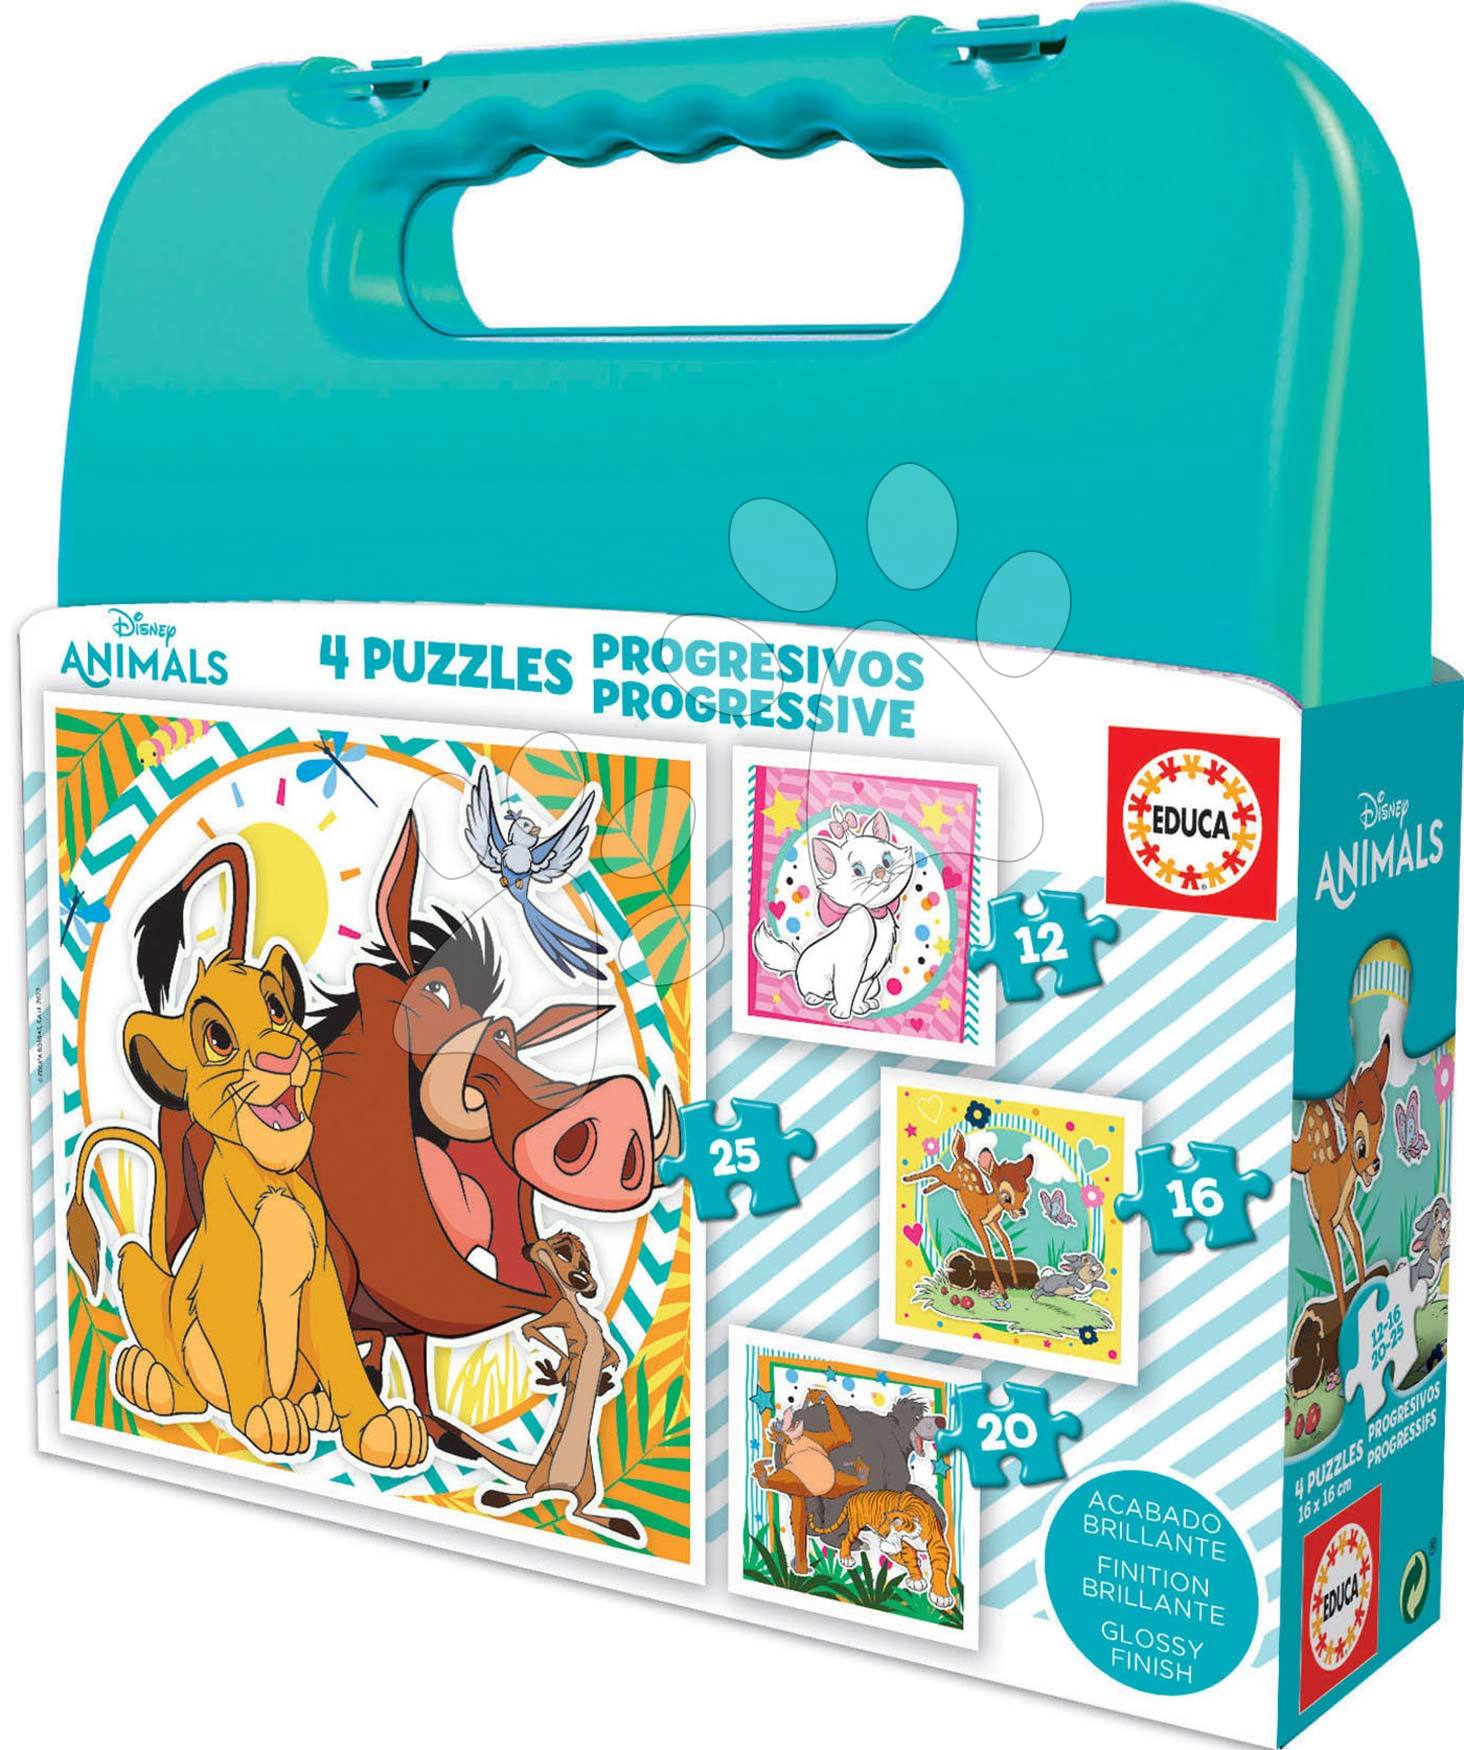 Puzzle Disney Animals kofferben Progressive Educa 12-16-20-25 darabos